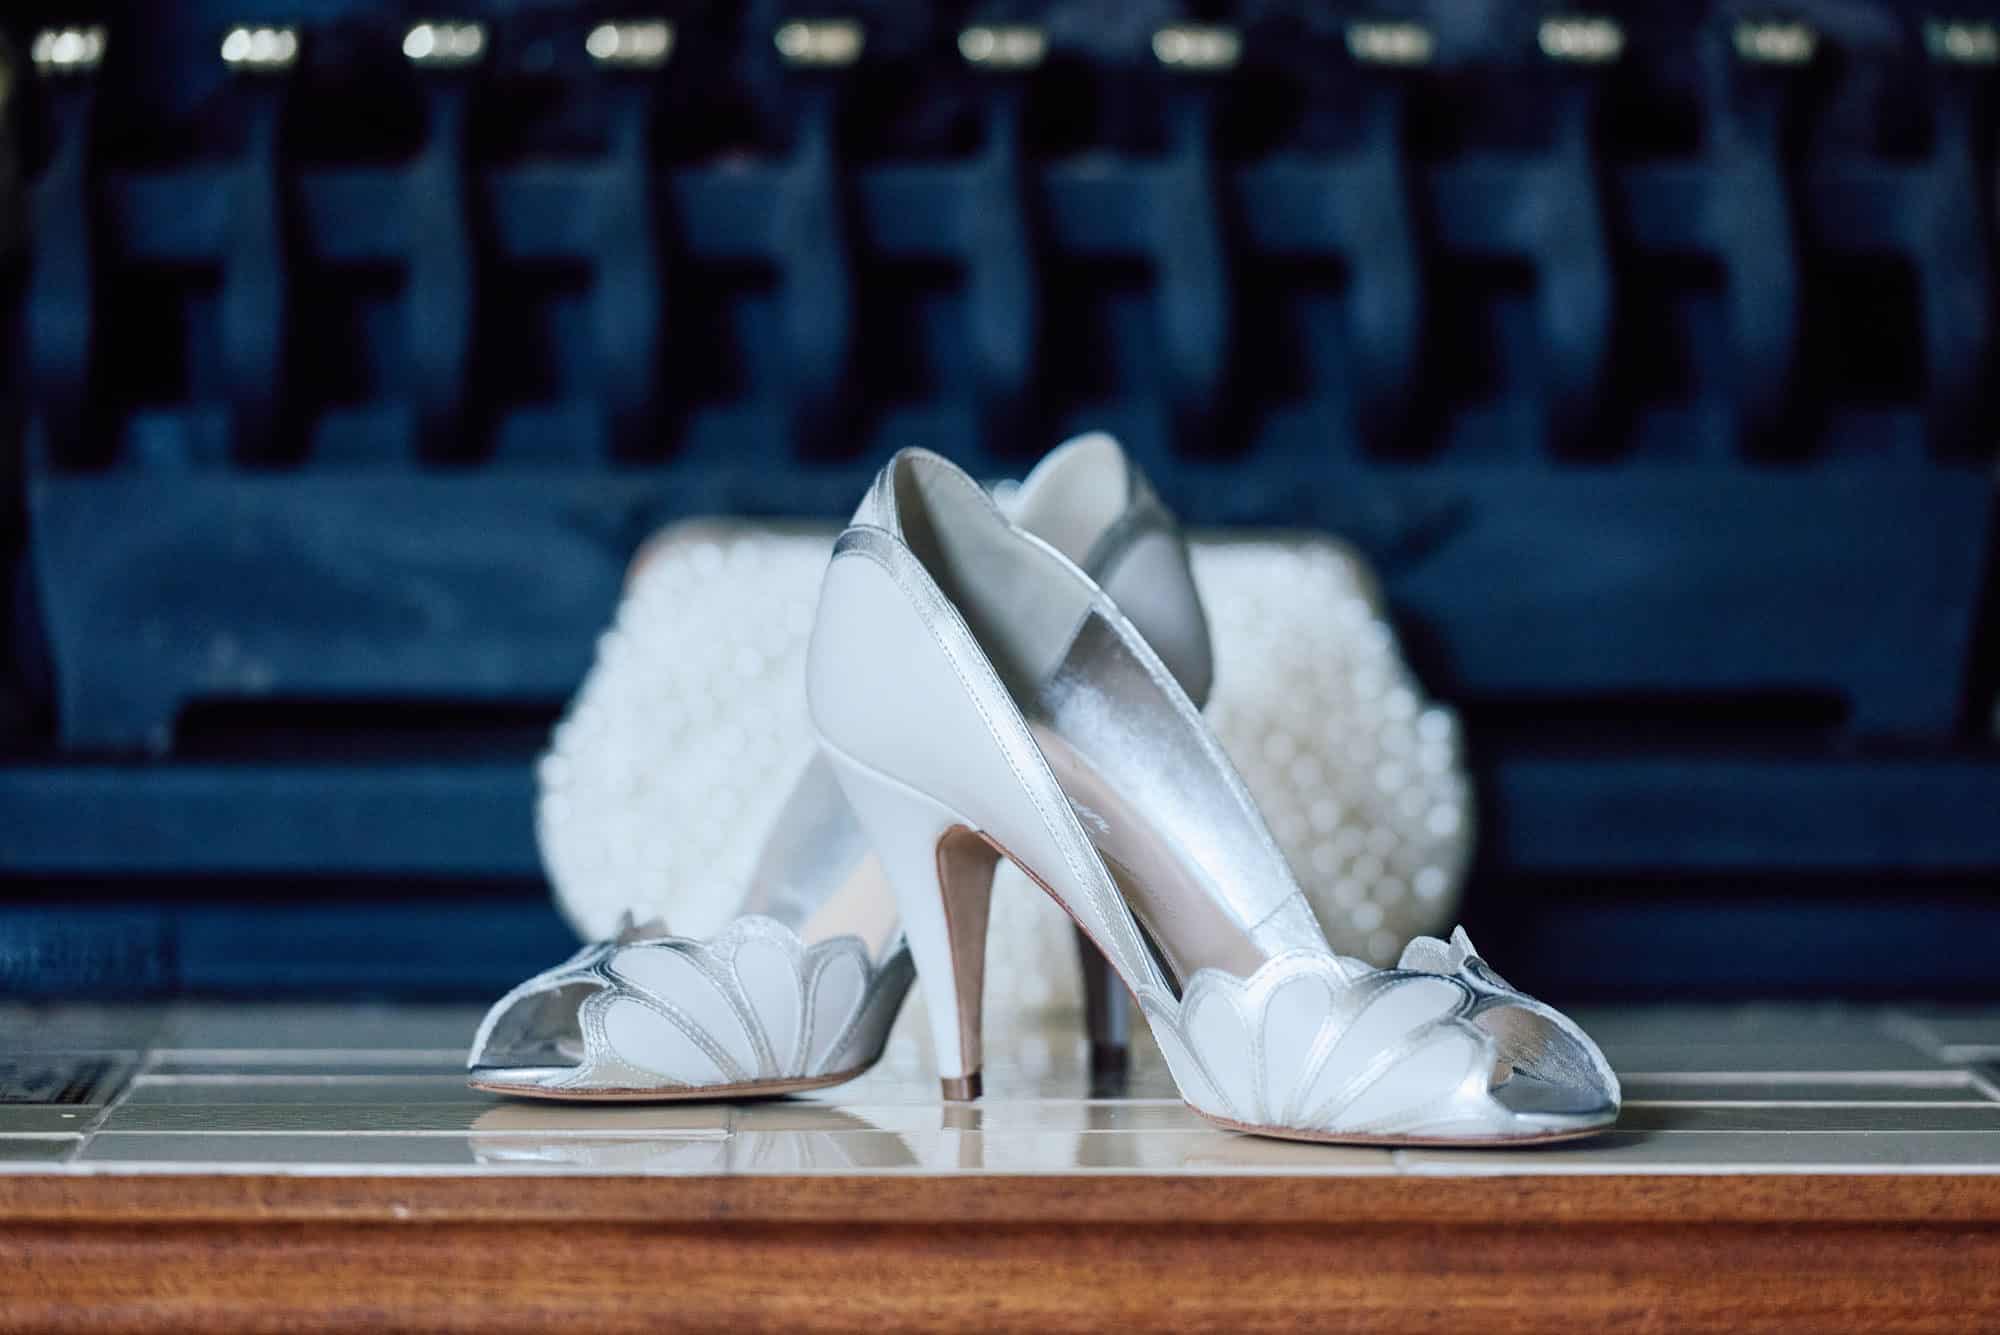 The Bride's shoes